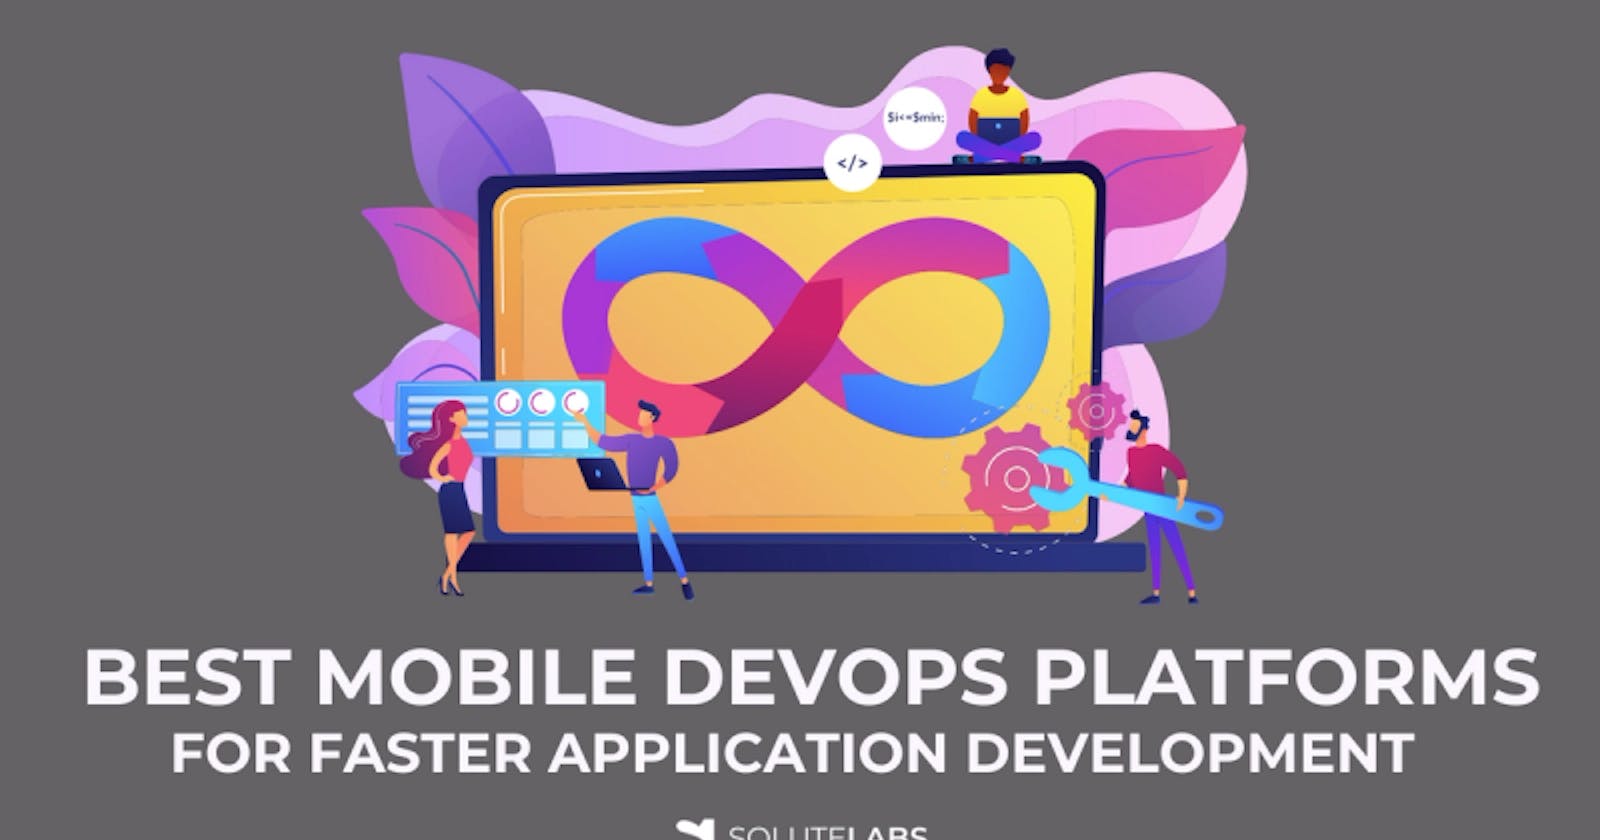 6 Best Mobile DevOps Platforms for Faster Application Development